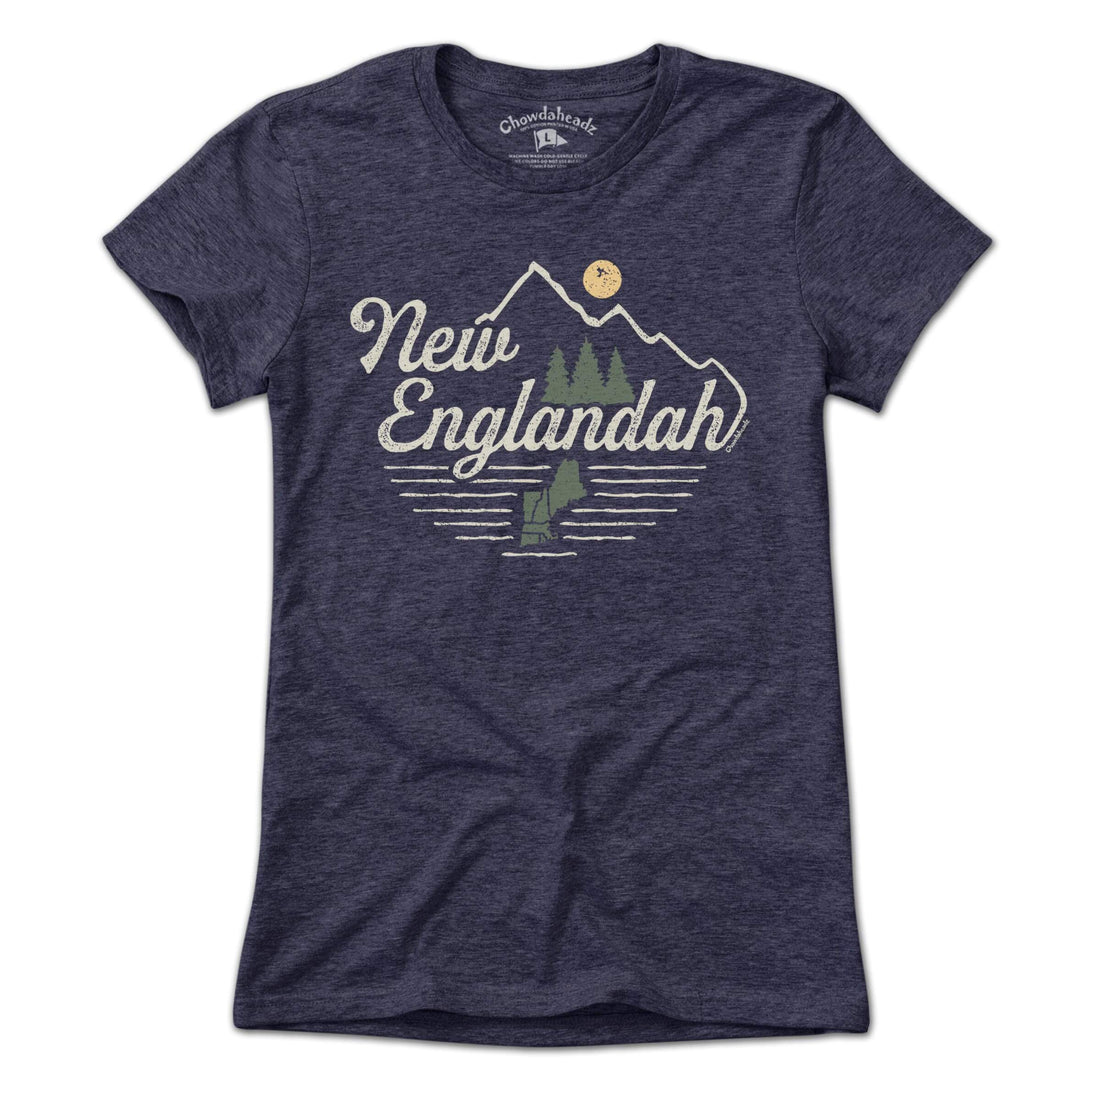 New Englandah T-Shirt - Chowdaheadz